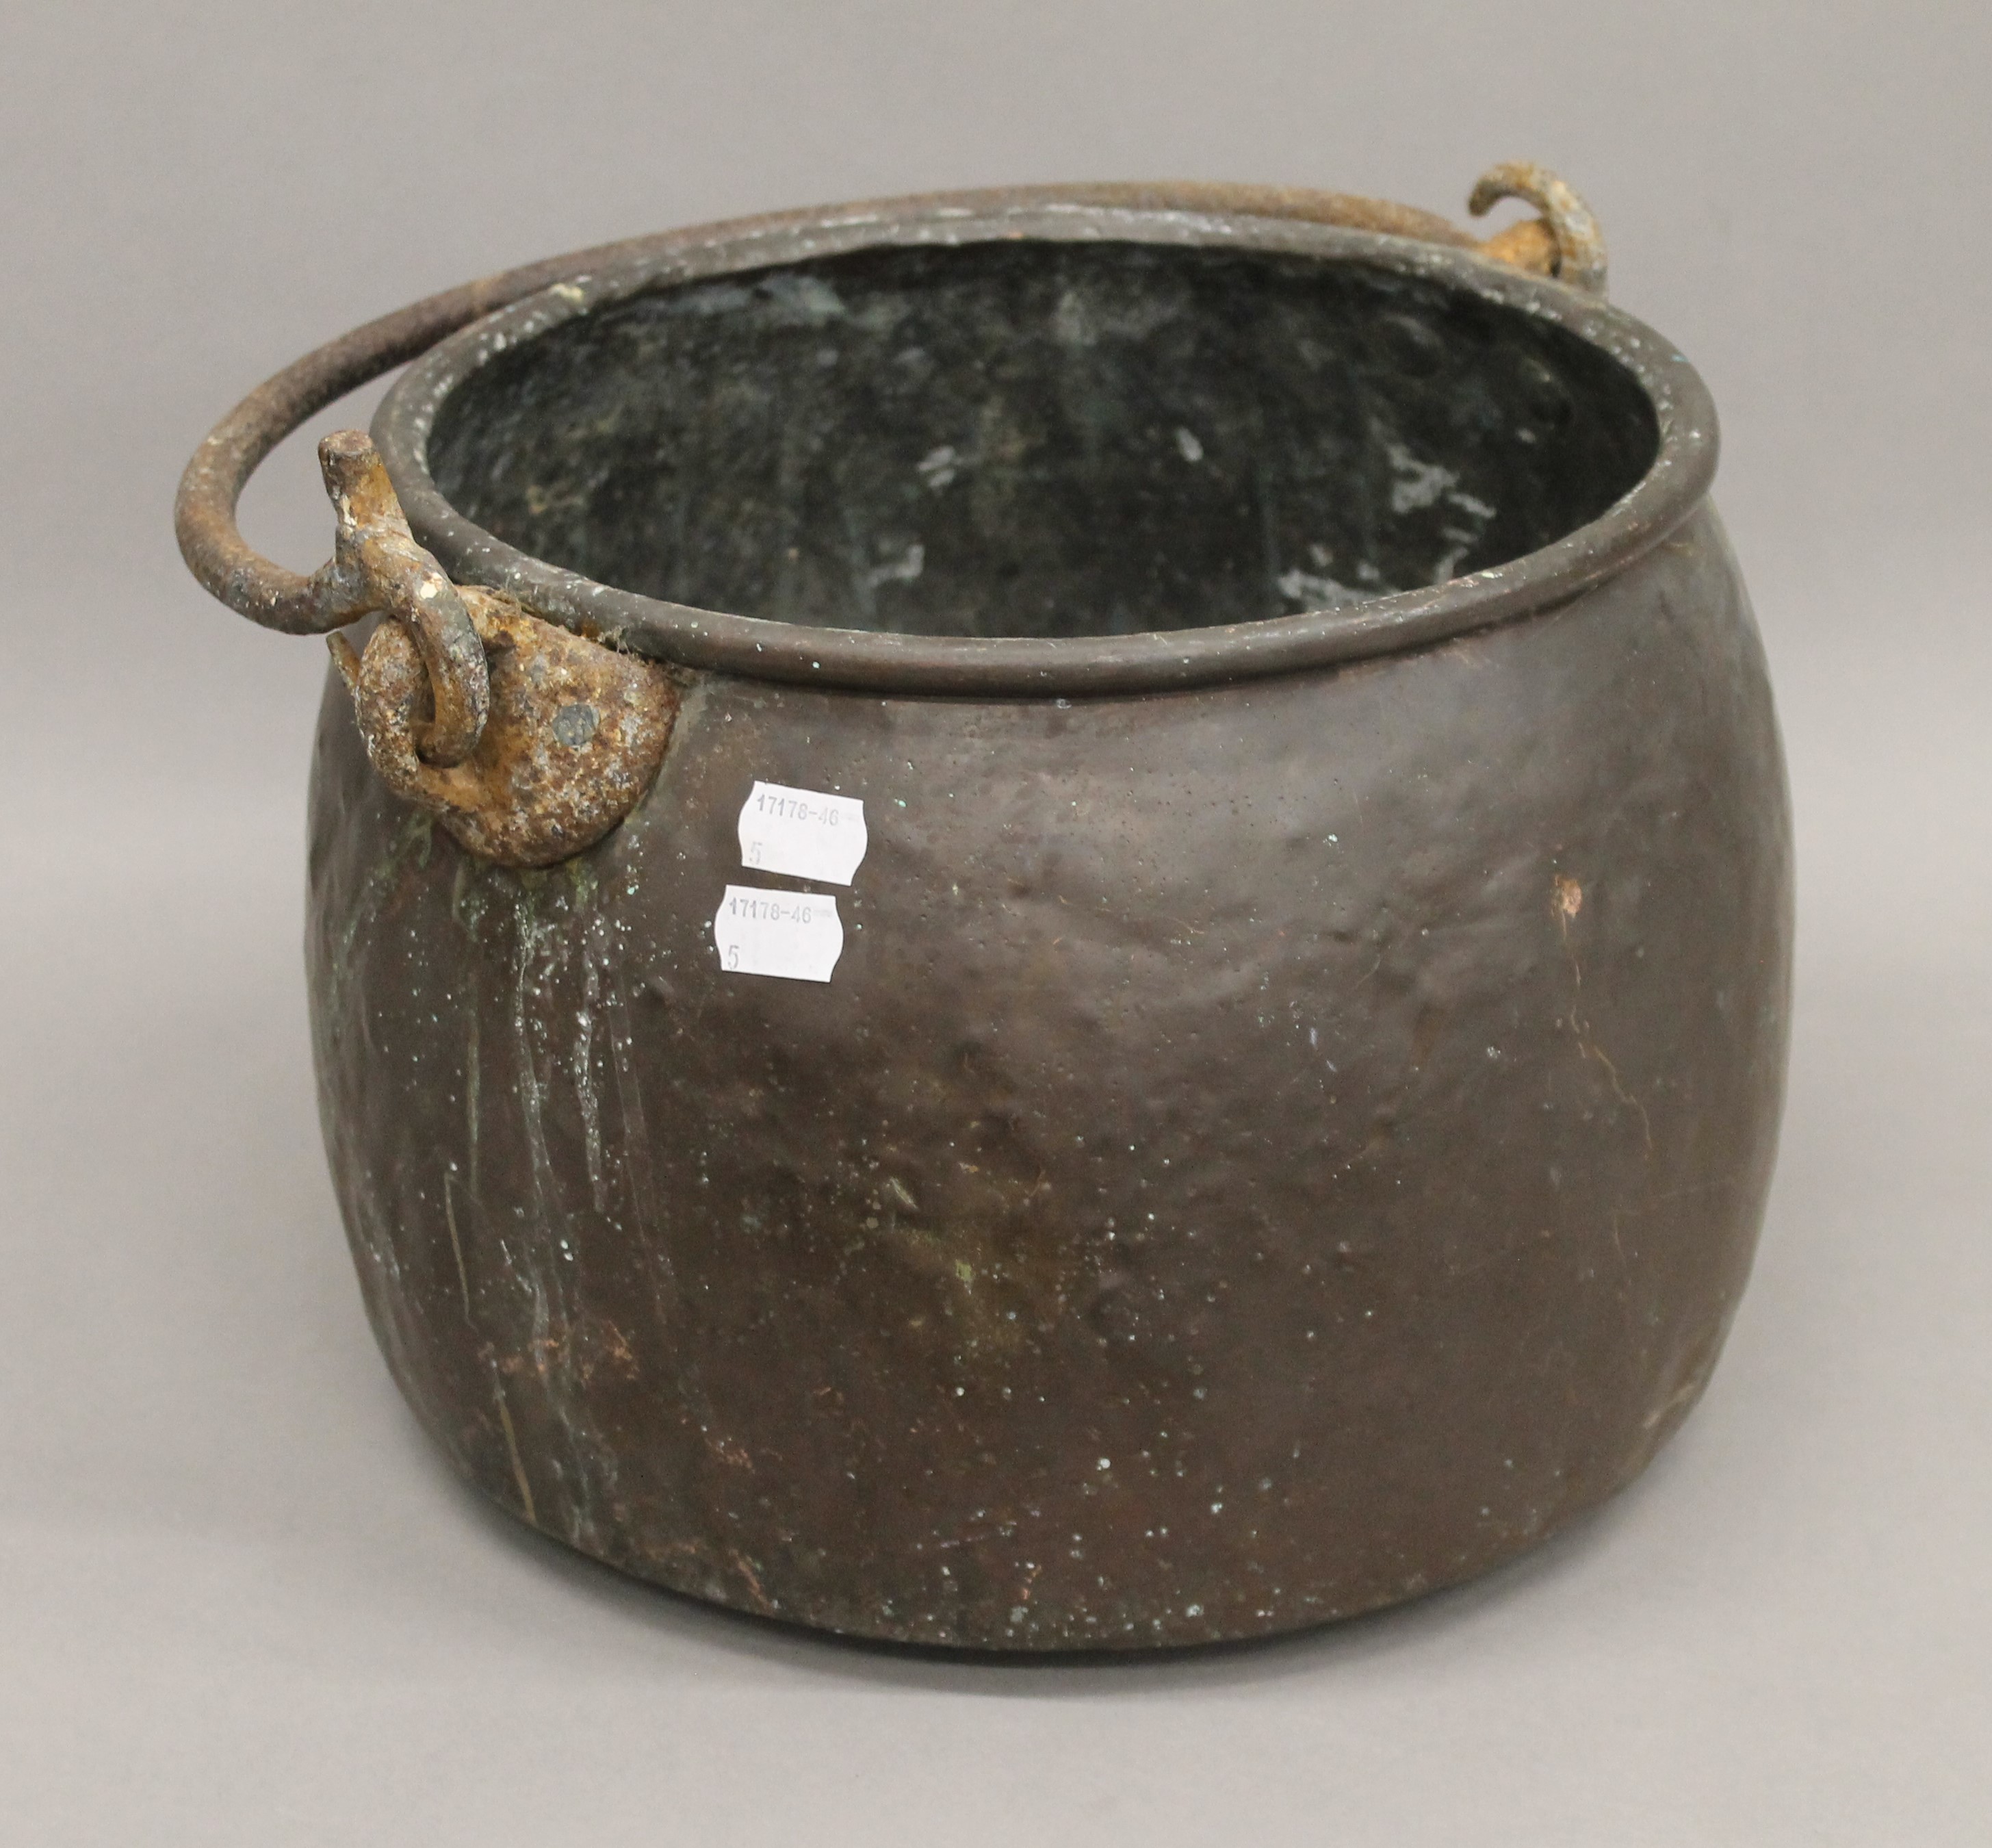 A 19th century copper cauldron. 35 cm wide.